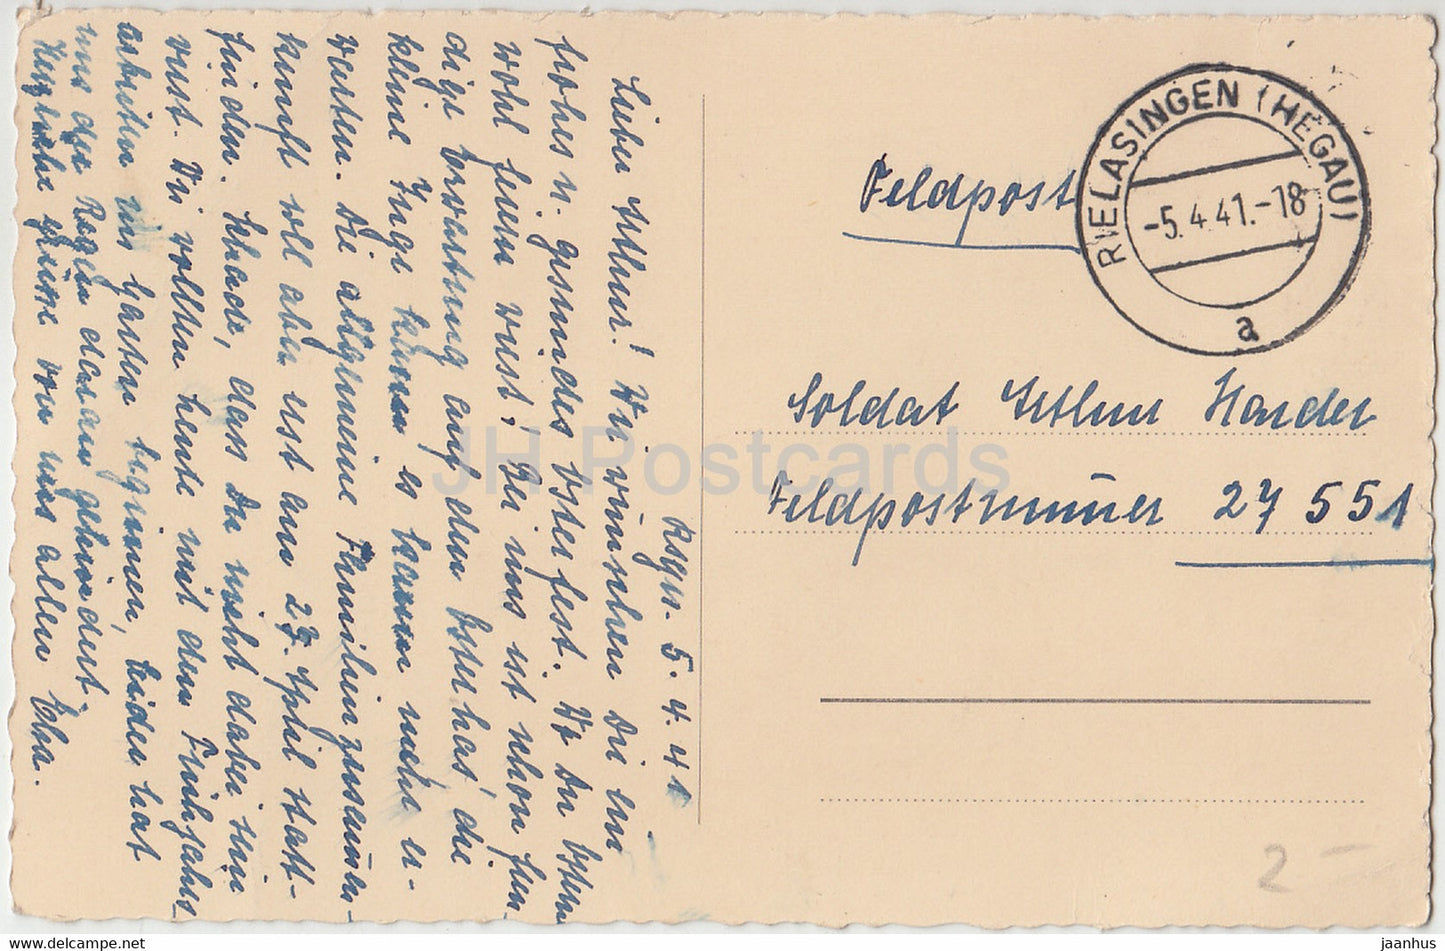 Carte de vœux de Pâques - Frohes Osterfest - mouton - Feldpost - carte postale ancienne - 1941 - Allemagne - utilisé